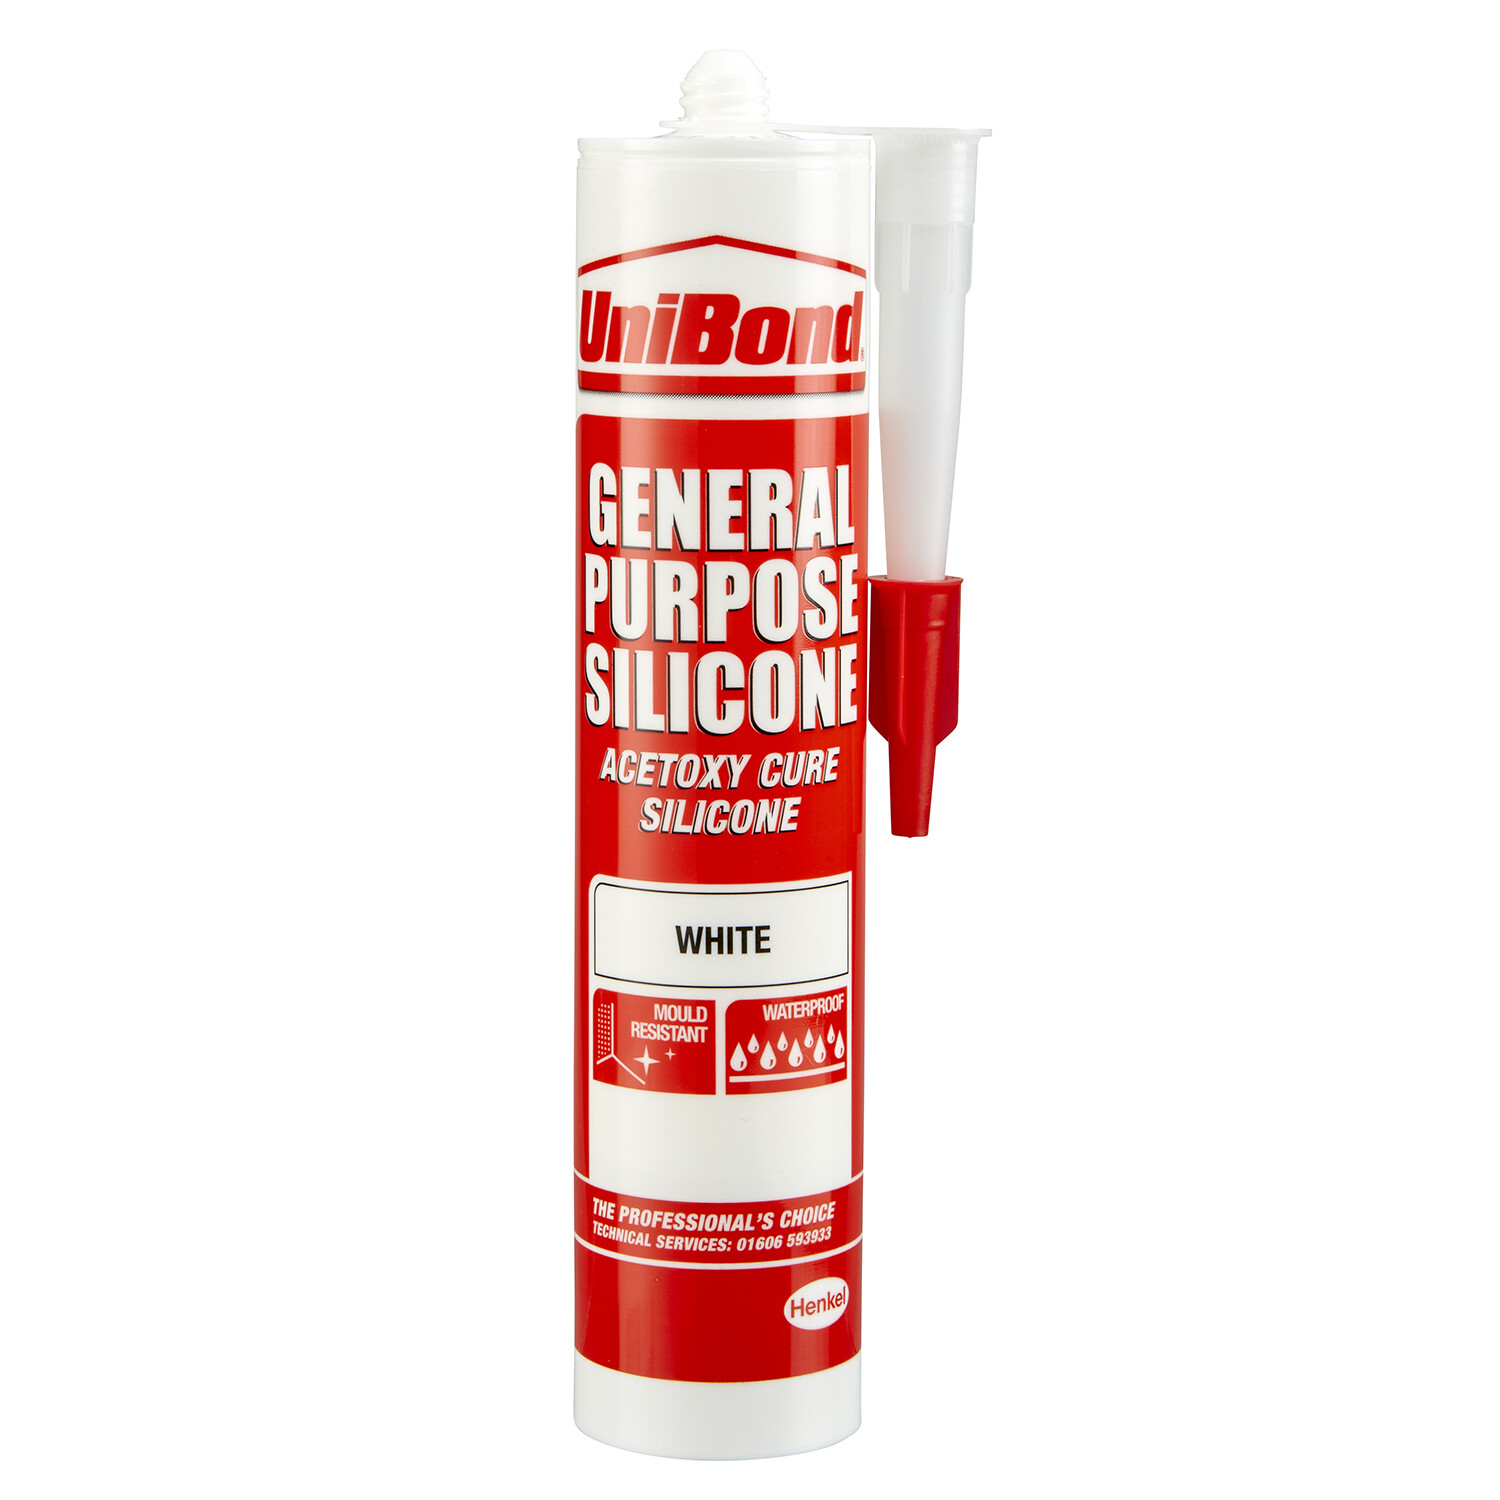 UniBond General Purpose White Acetoxy Cure Silicone Sealant Image